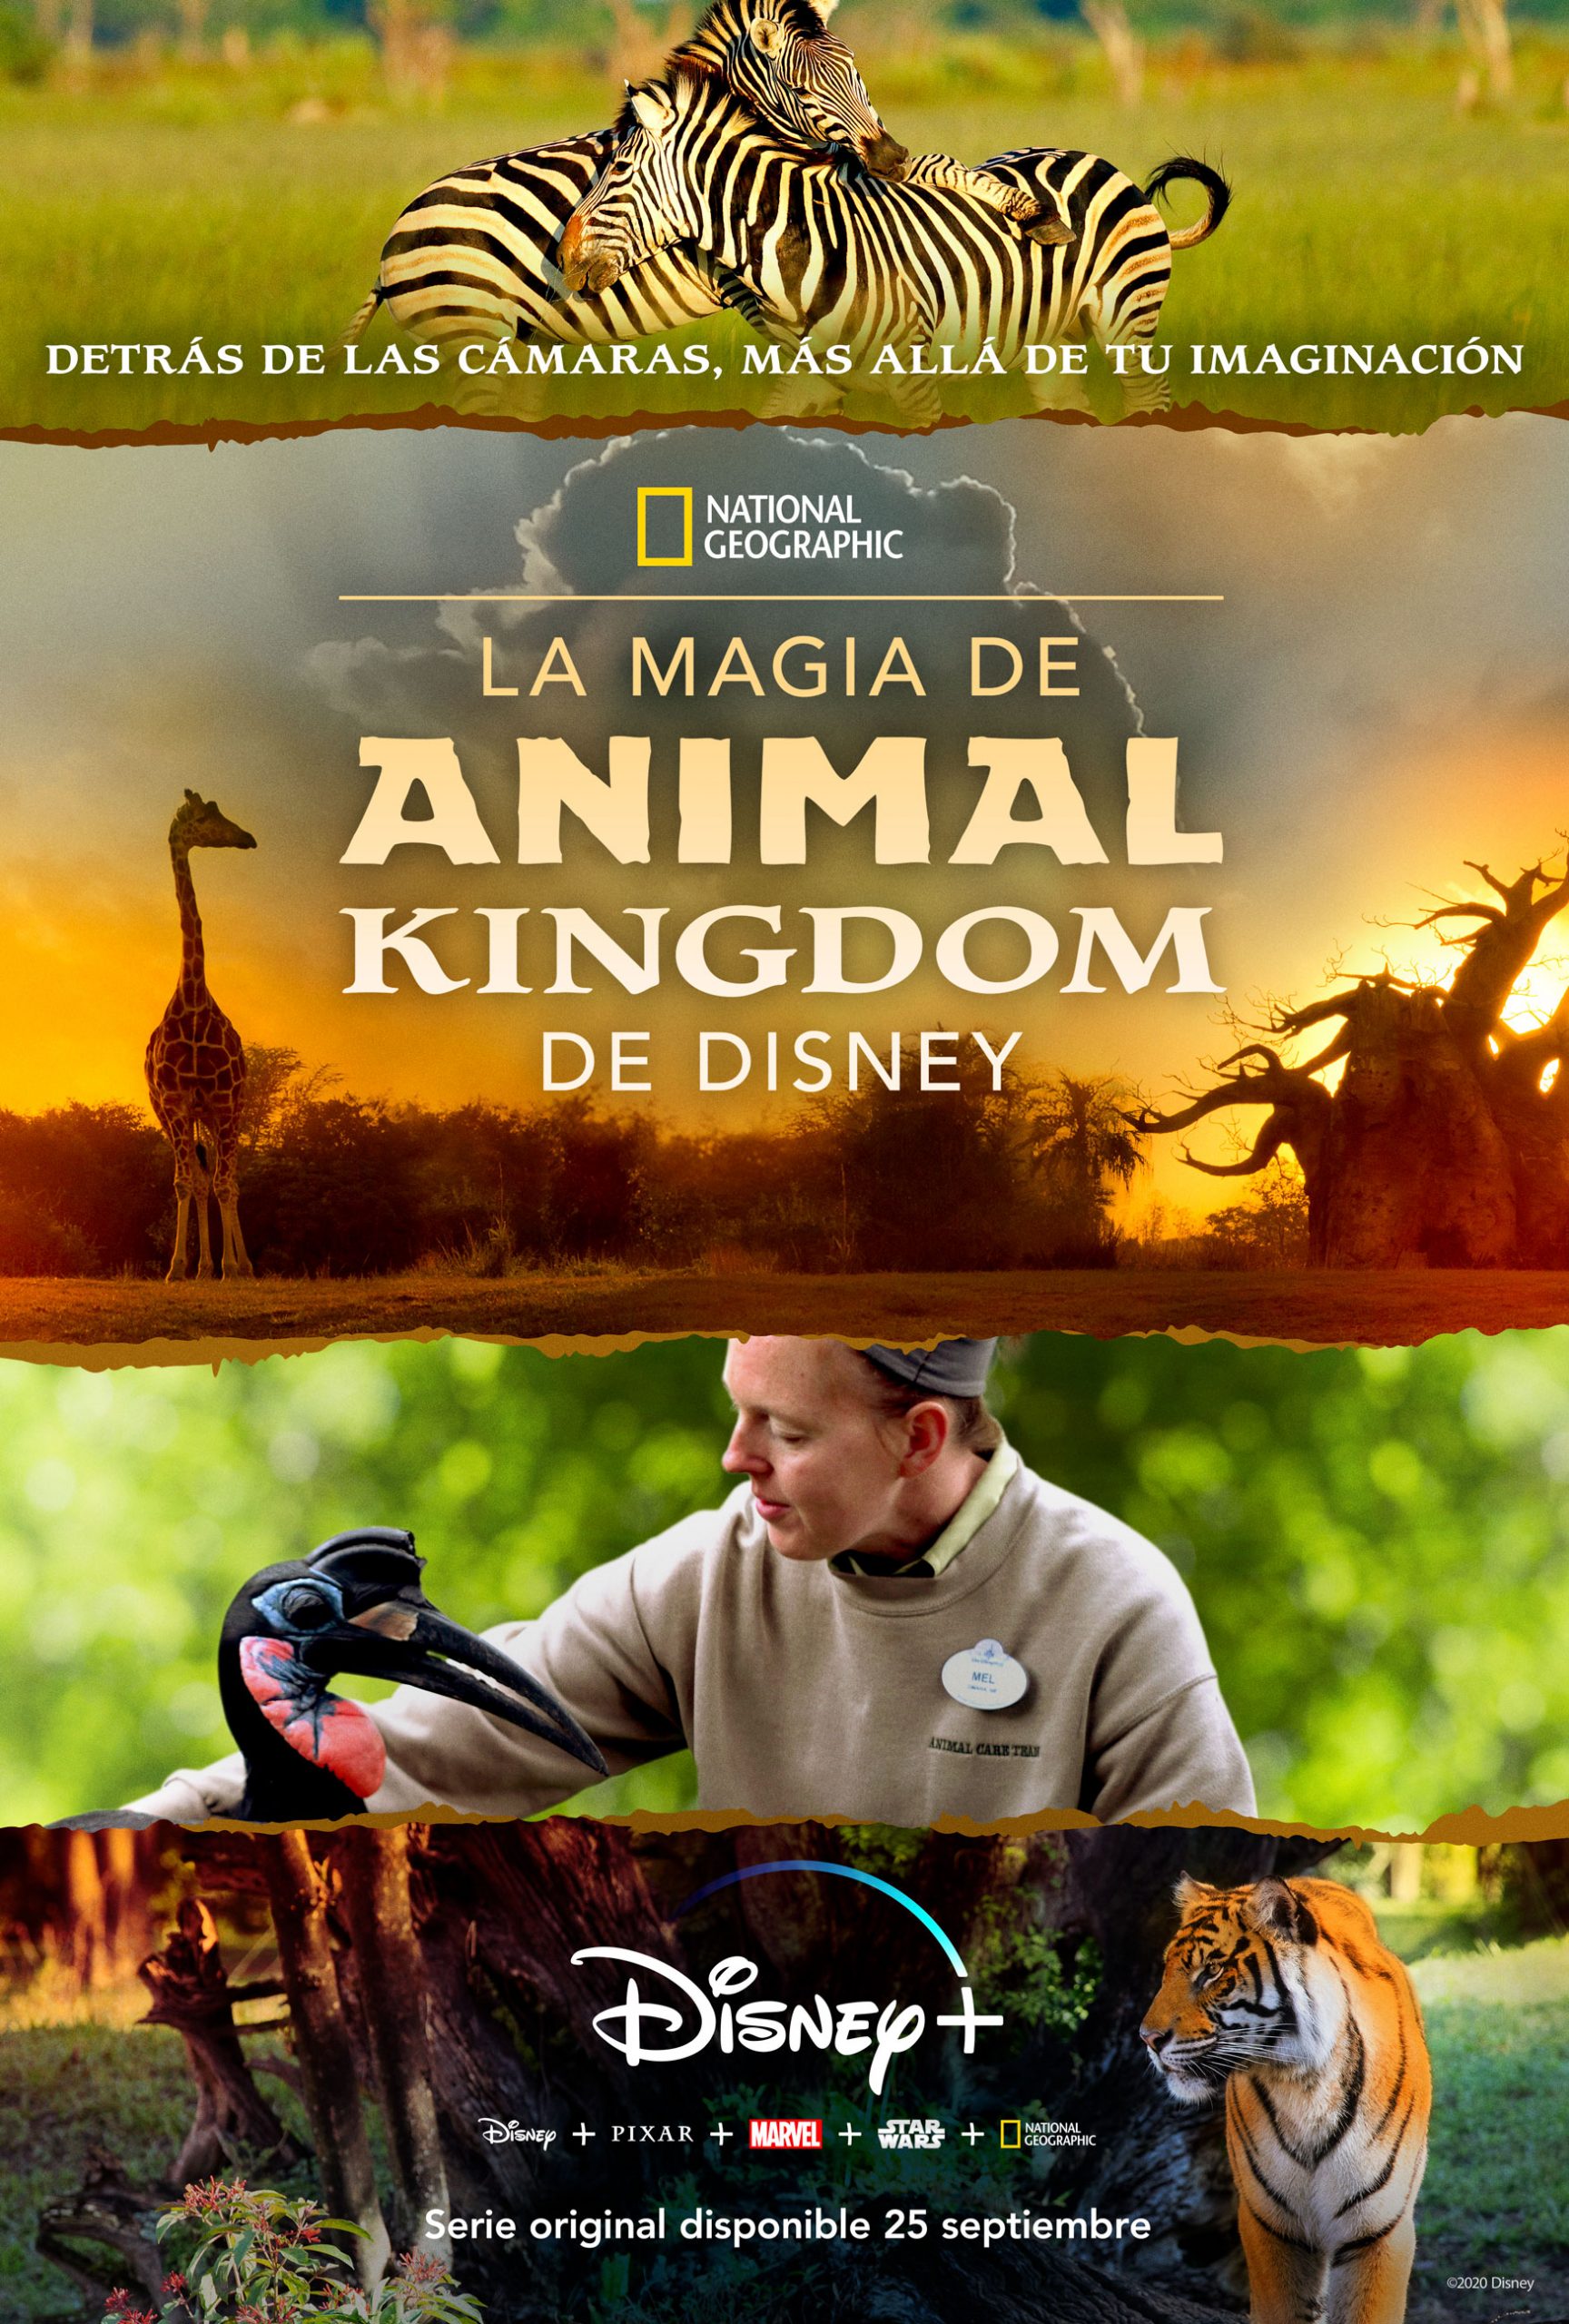 LA MAGIA DE ANIMAL KINGDOM DE DISNEY